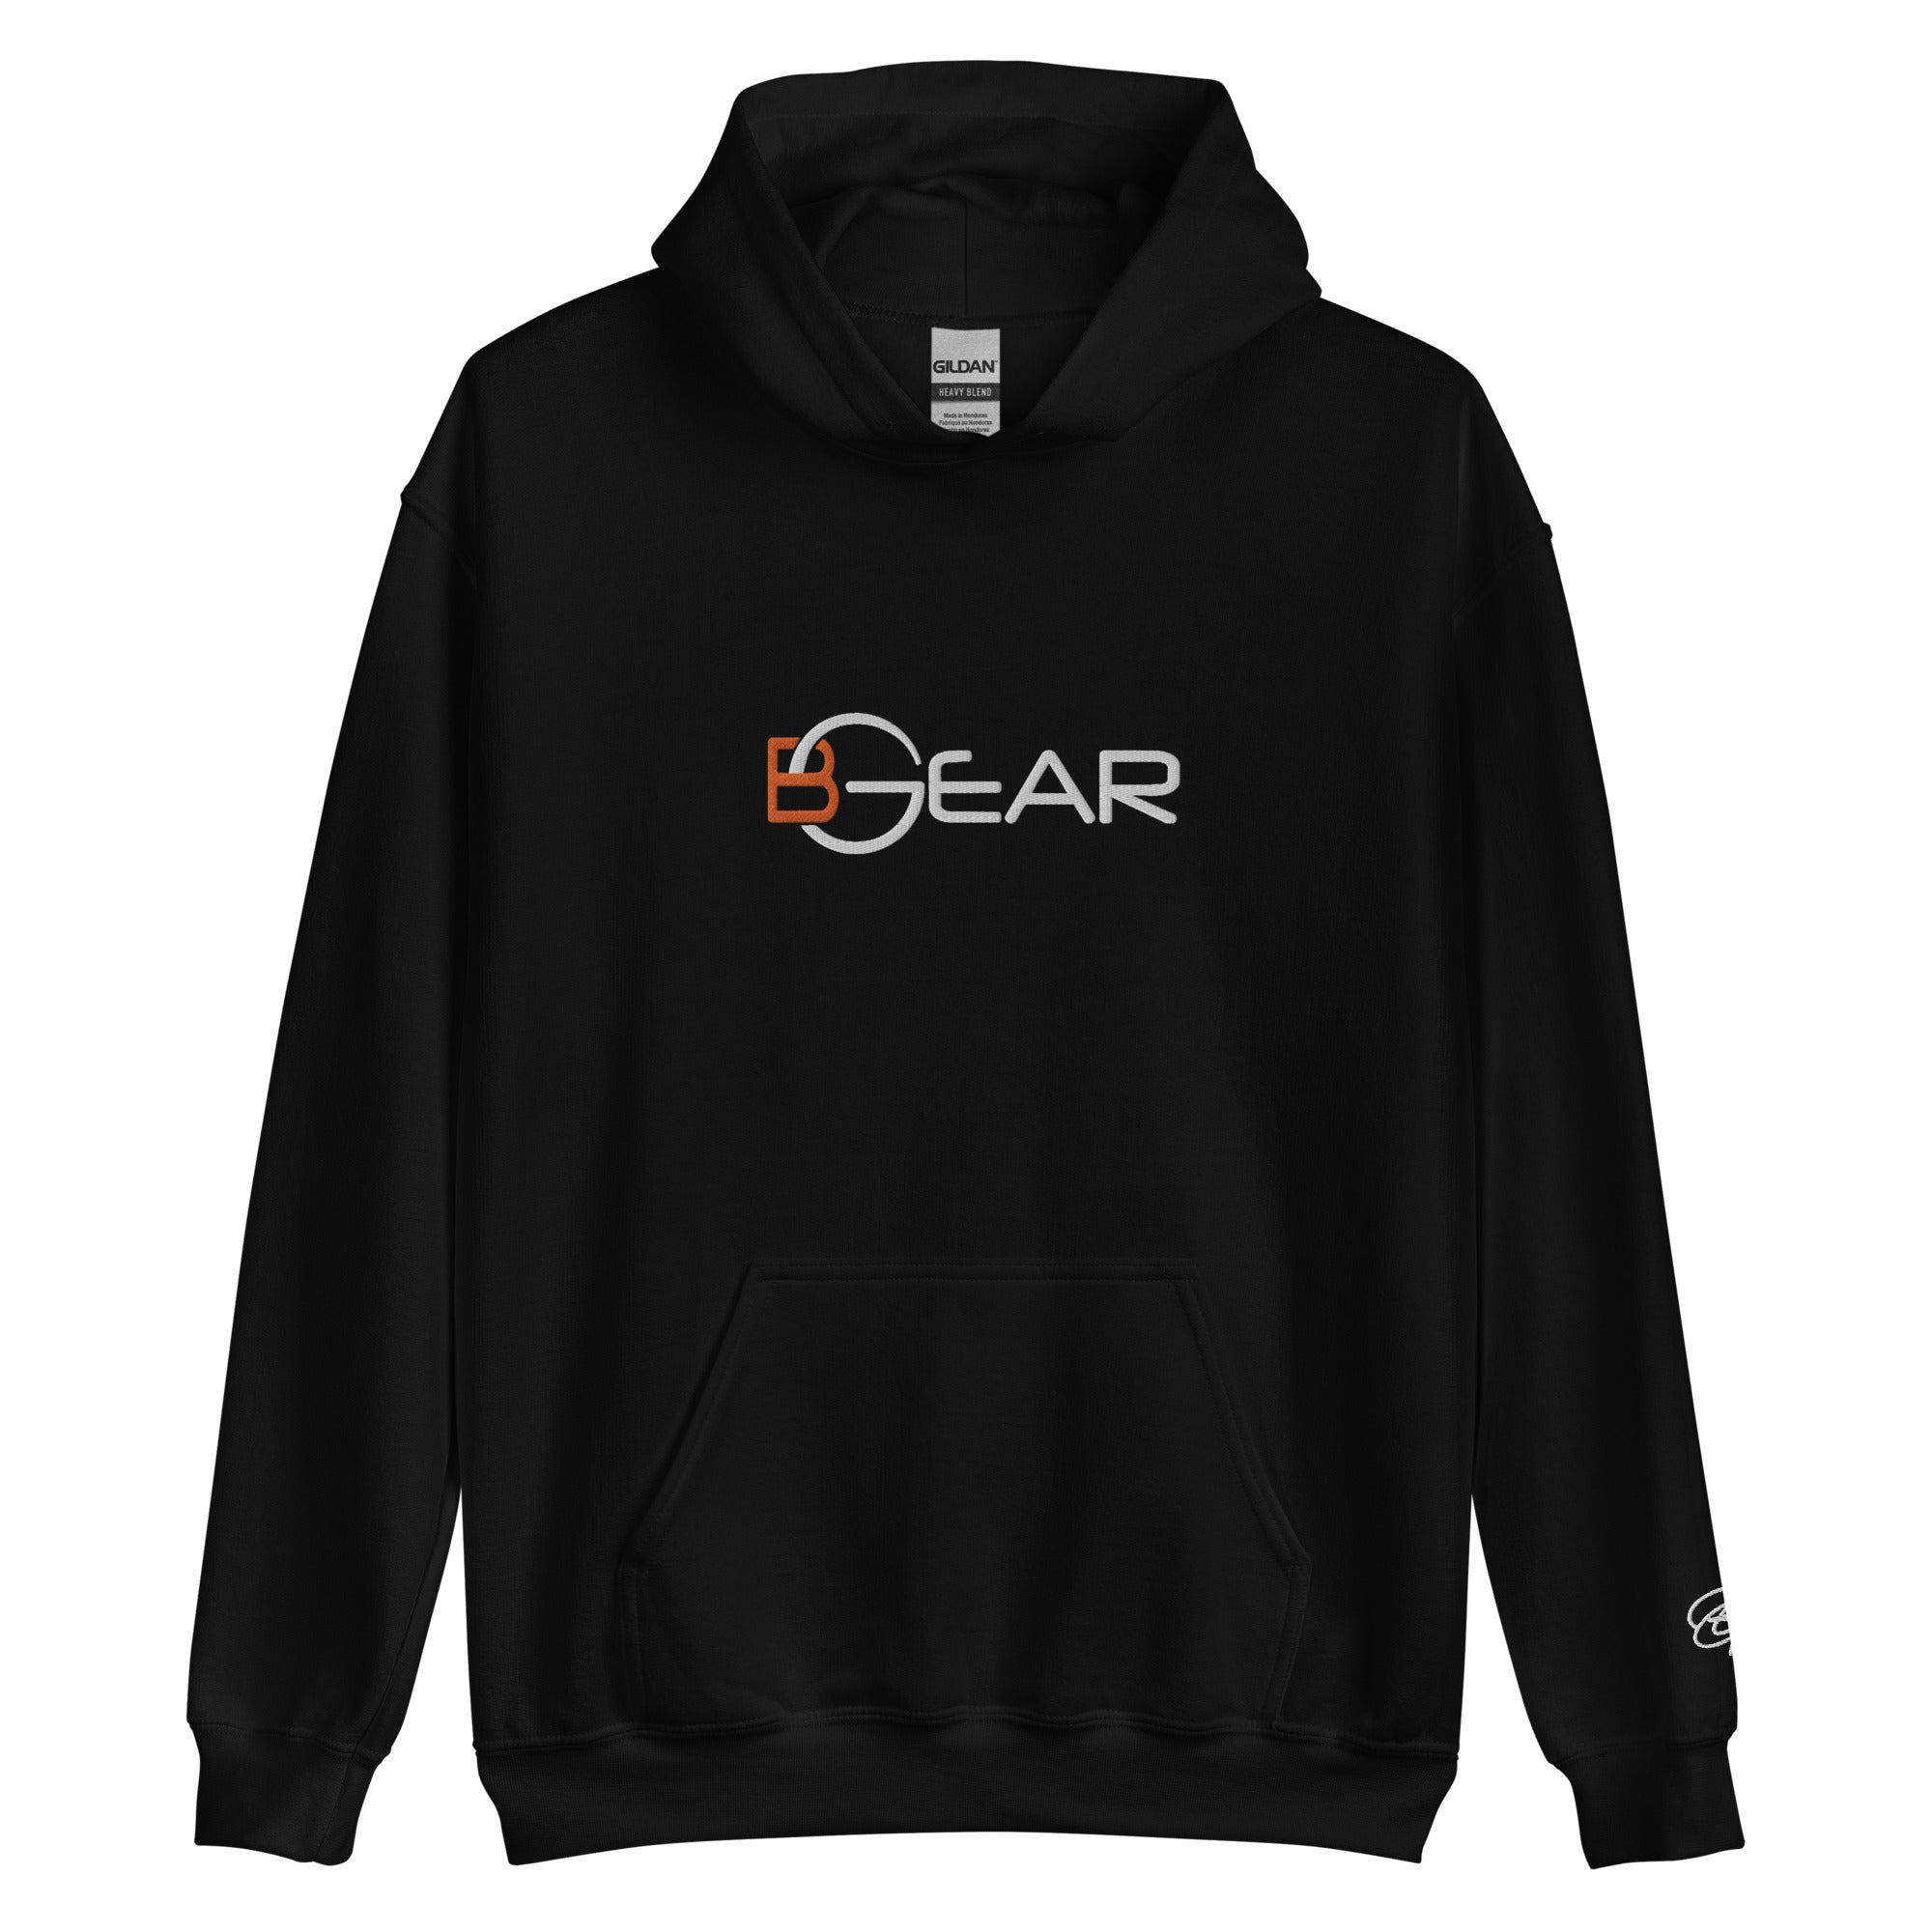 Unisex Heavy Blend Hooded Sweatshirt (BGear Front Design) – BGear